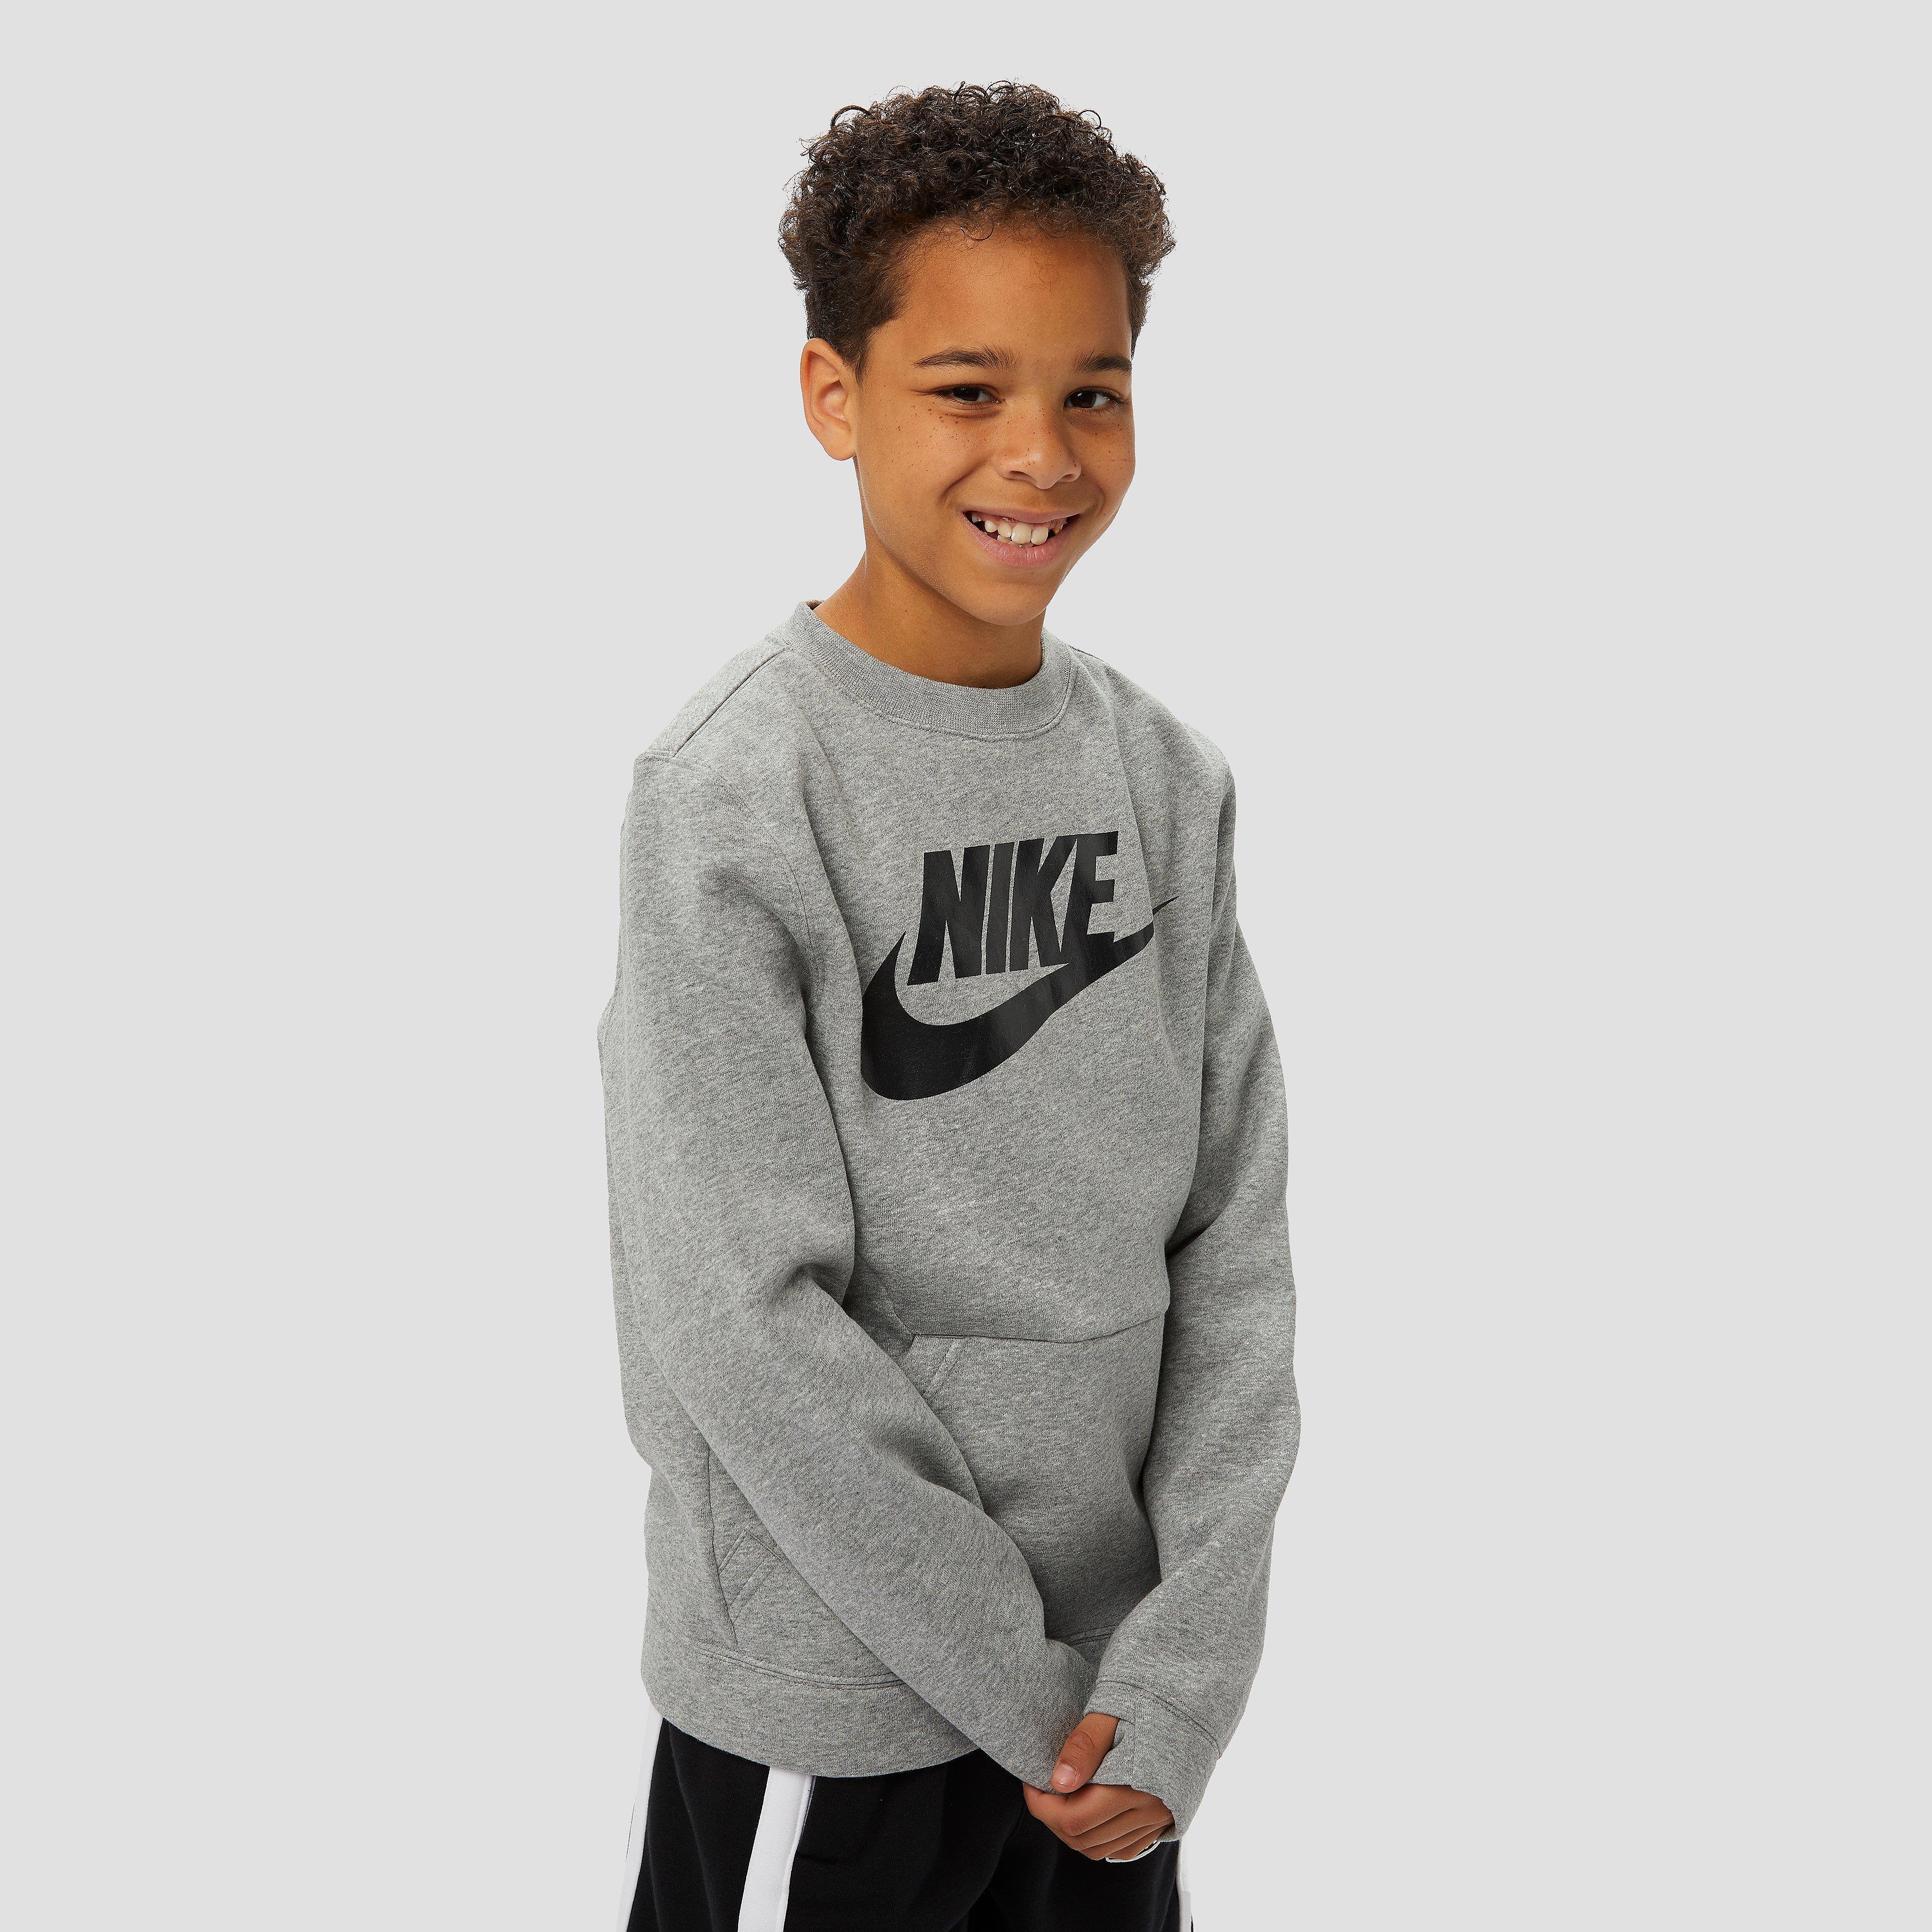 NIKE Sportswear crew club fleece sweater grijs kinderen Kinderen